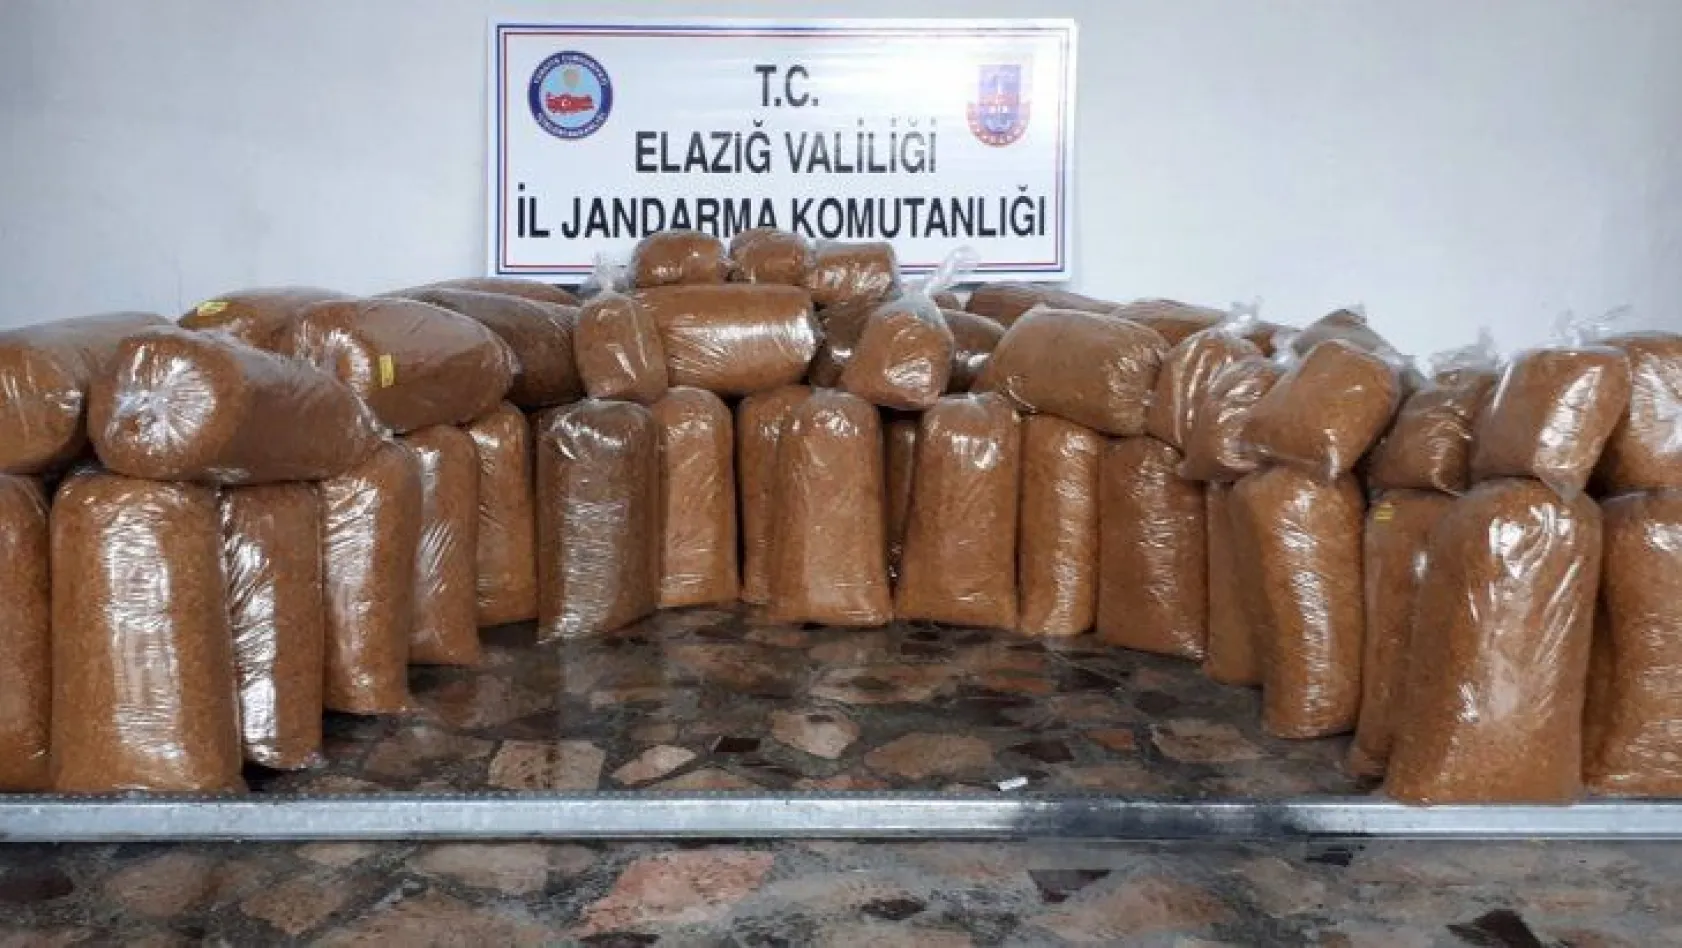 Elazığ'da 328 kilogram kaçak tütün ele geçirildi